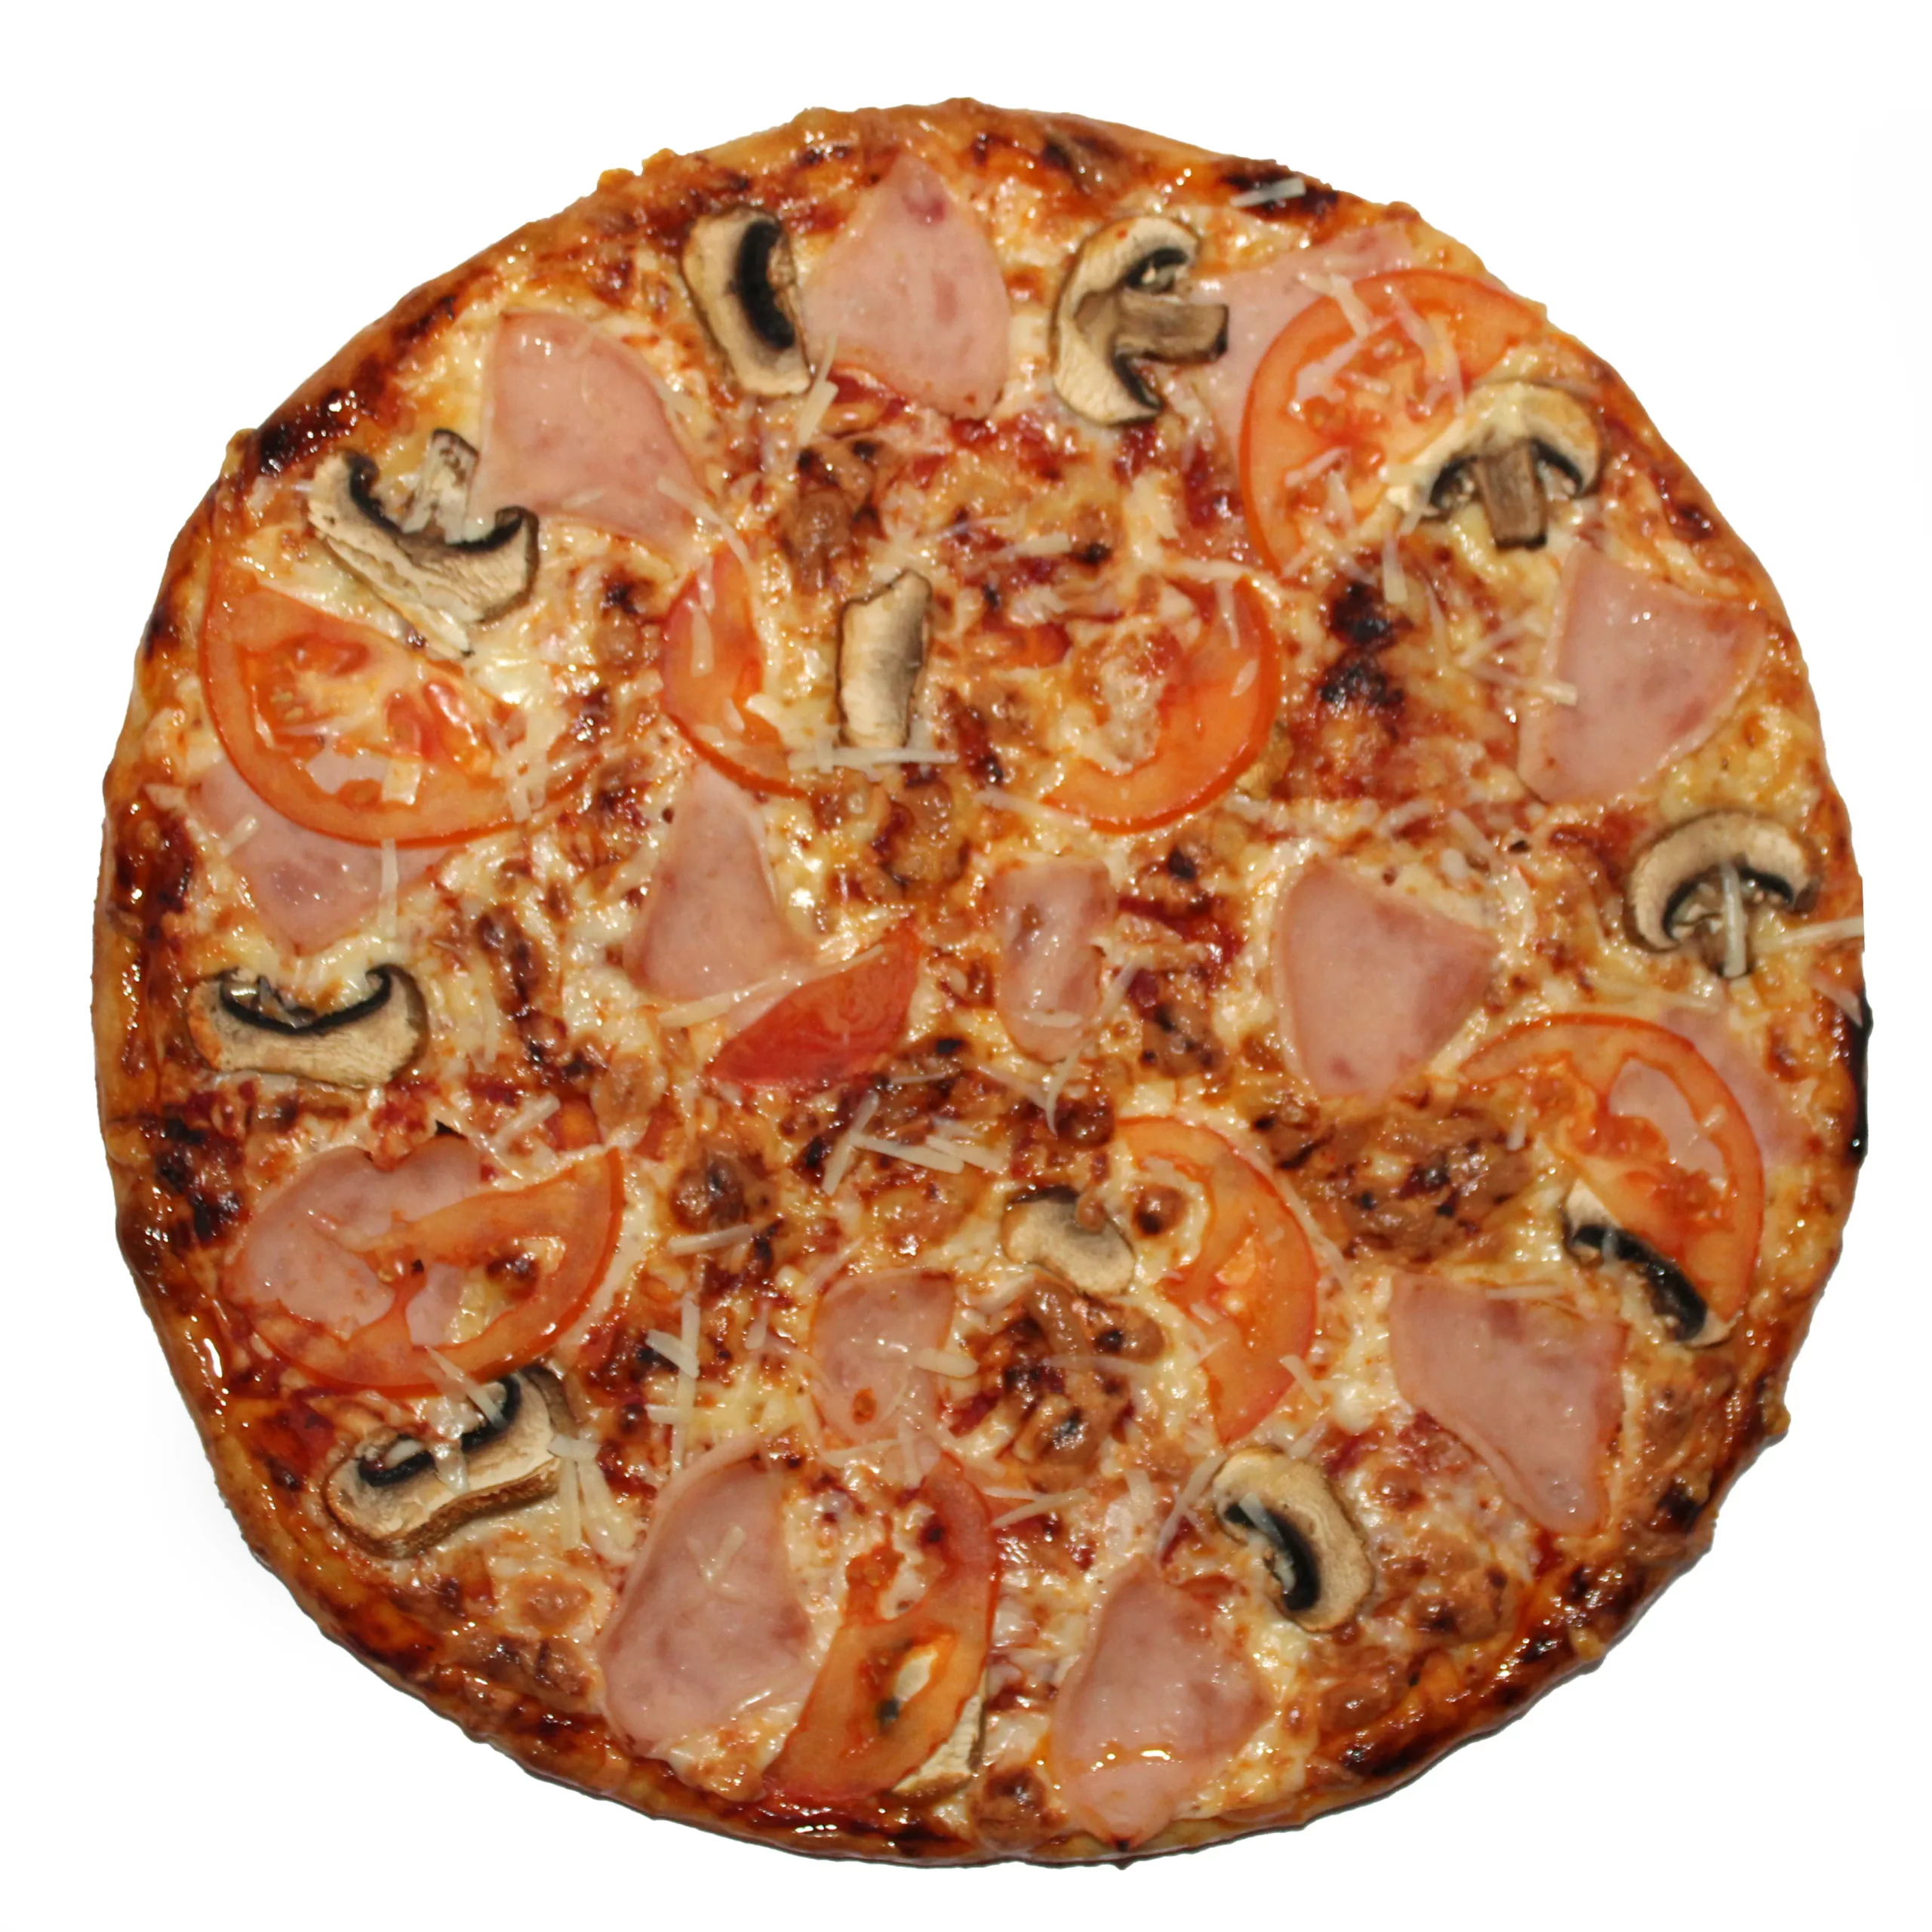 цезарь пицца с ветчиной и грибами замороженная фото 105